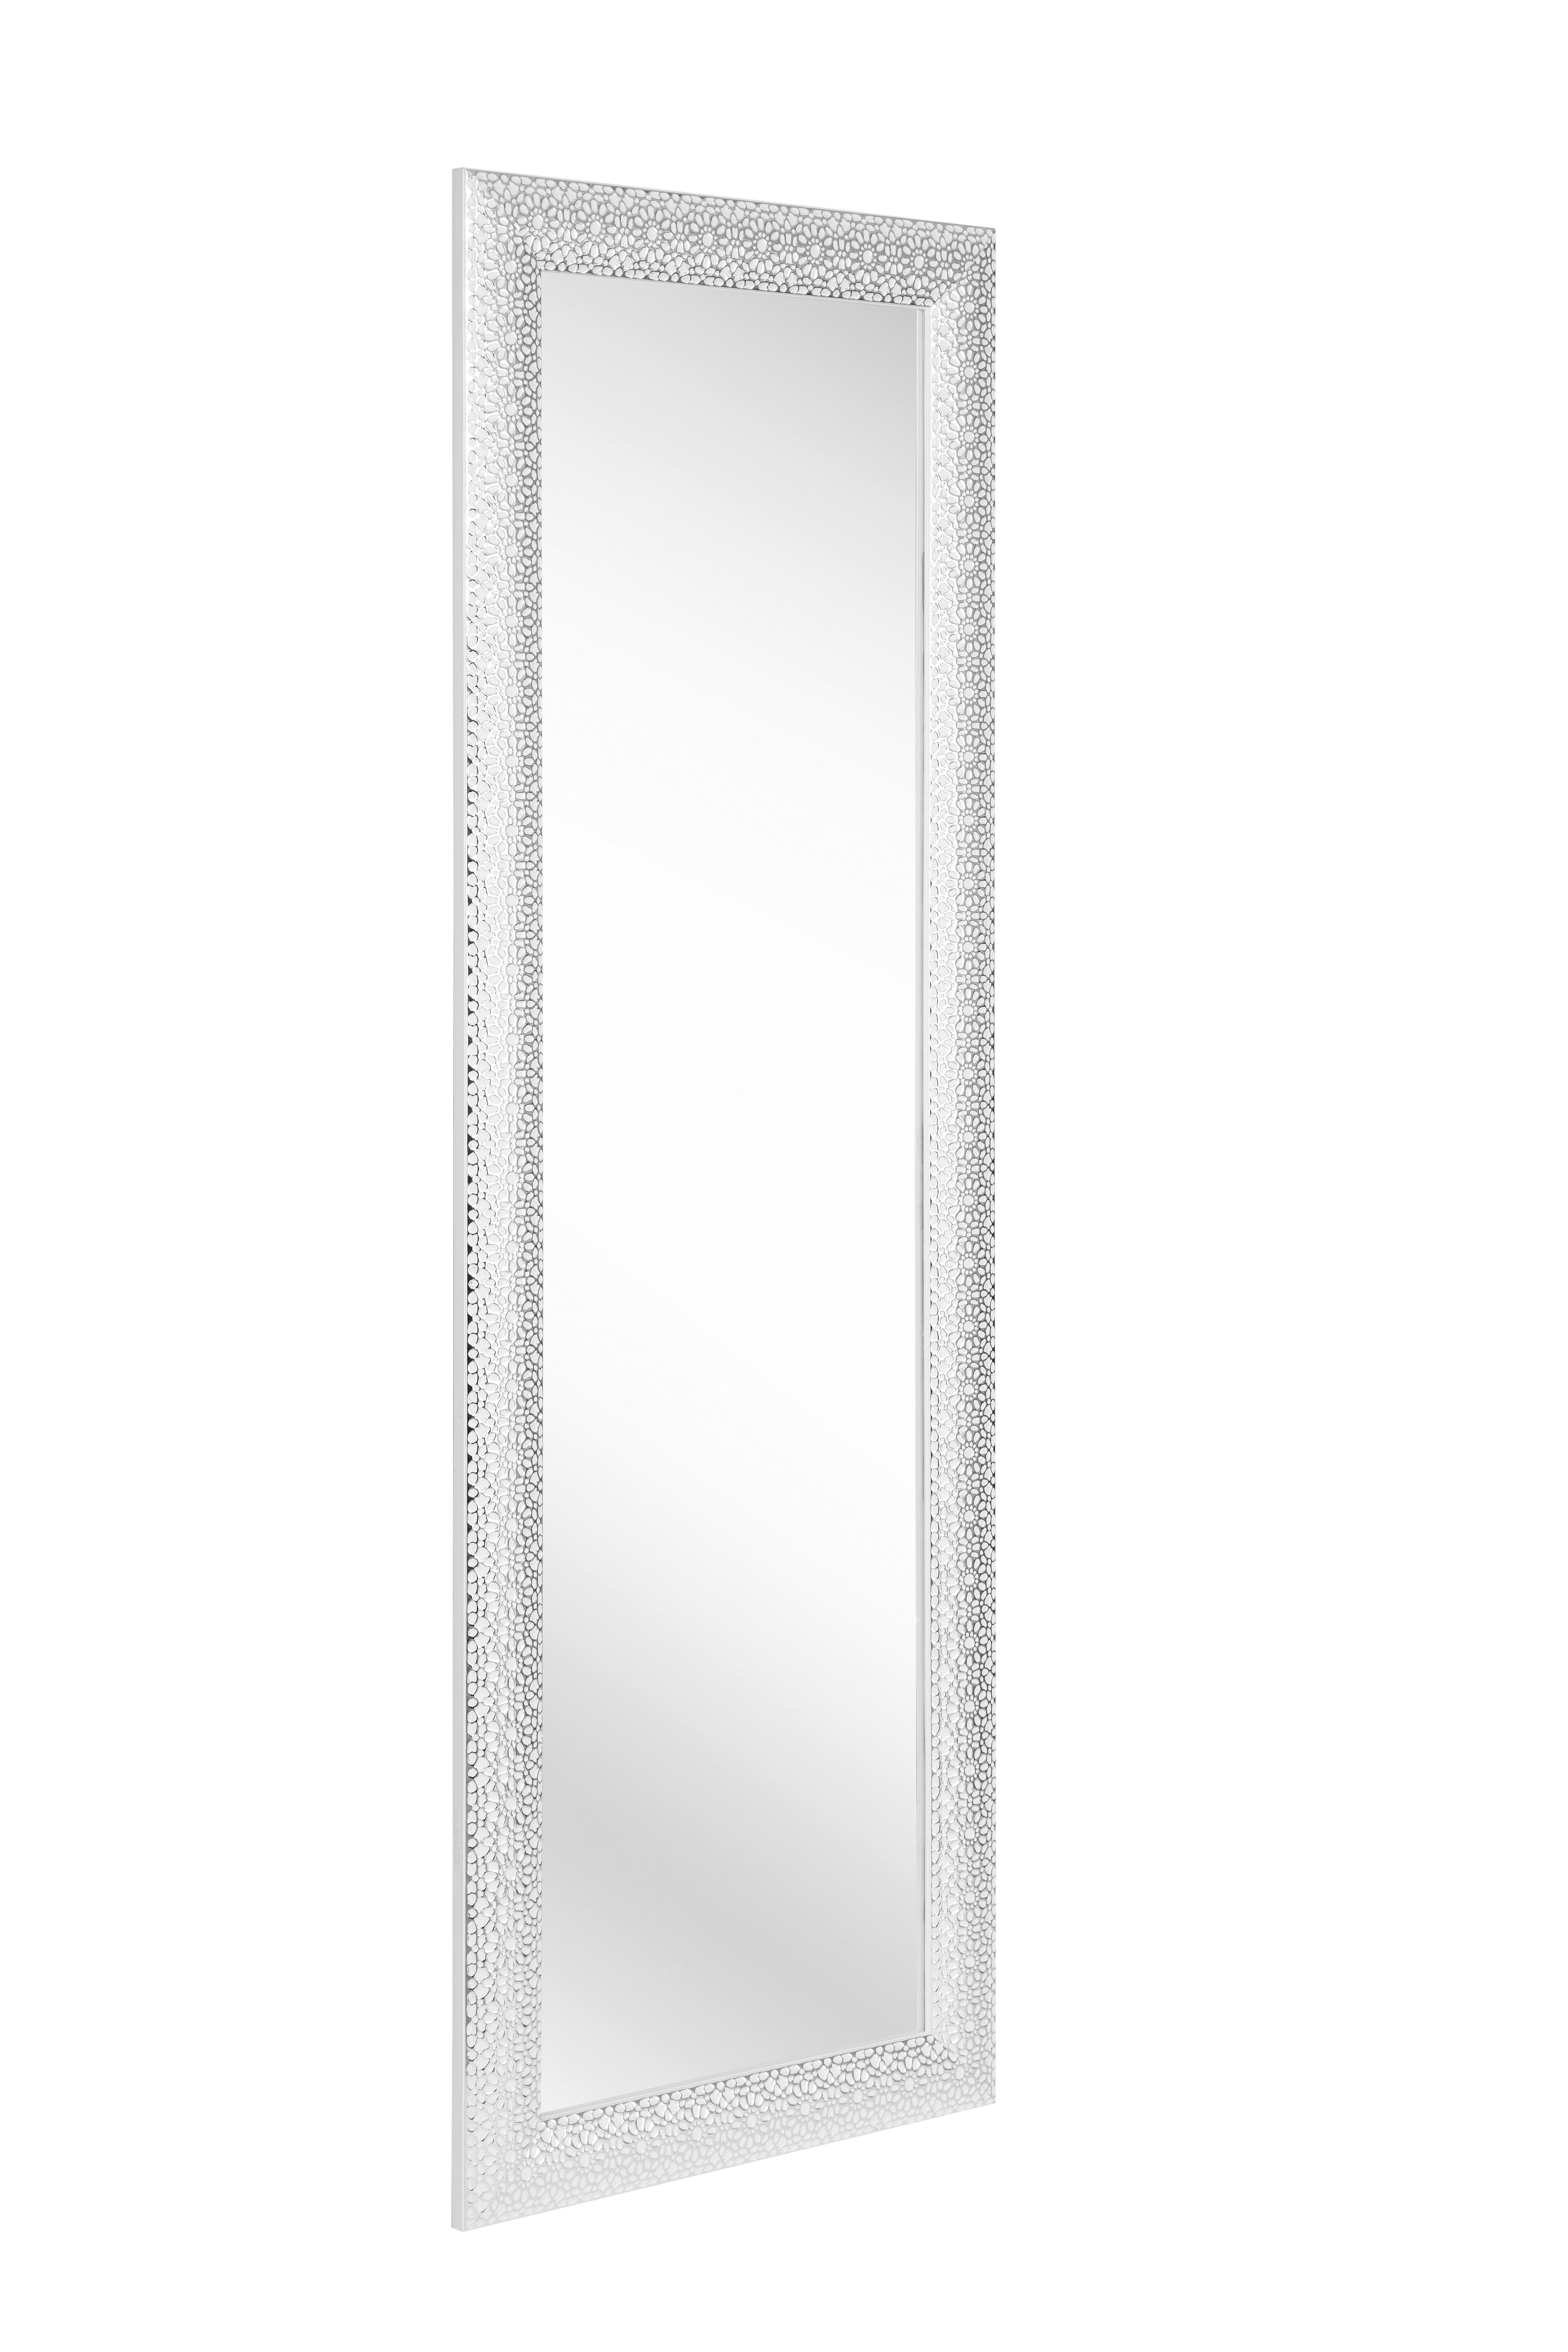 WANDSPIEGEL 50/150/3 cm  - Silberfarben/weiss, Lifestyle, Glas/Kunststoff (50/150/3cm) - Xora